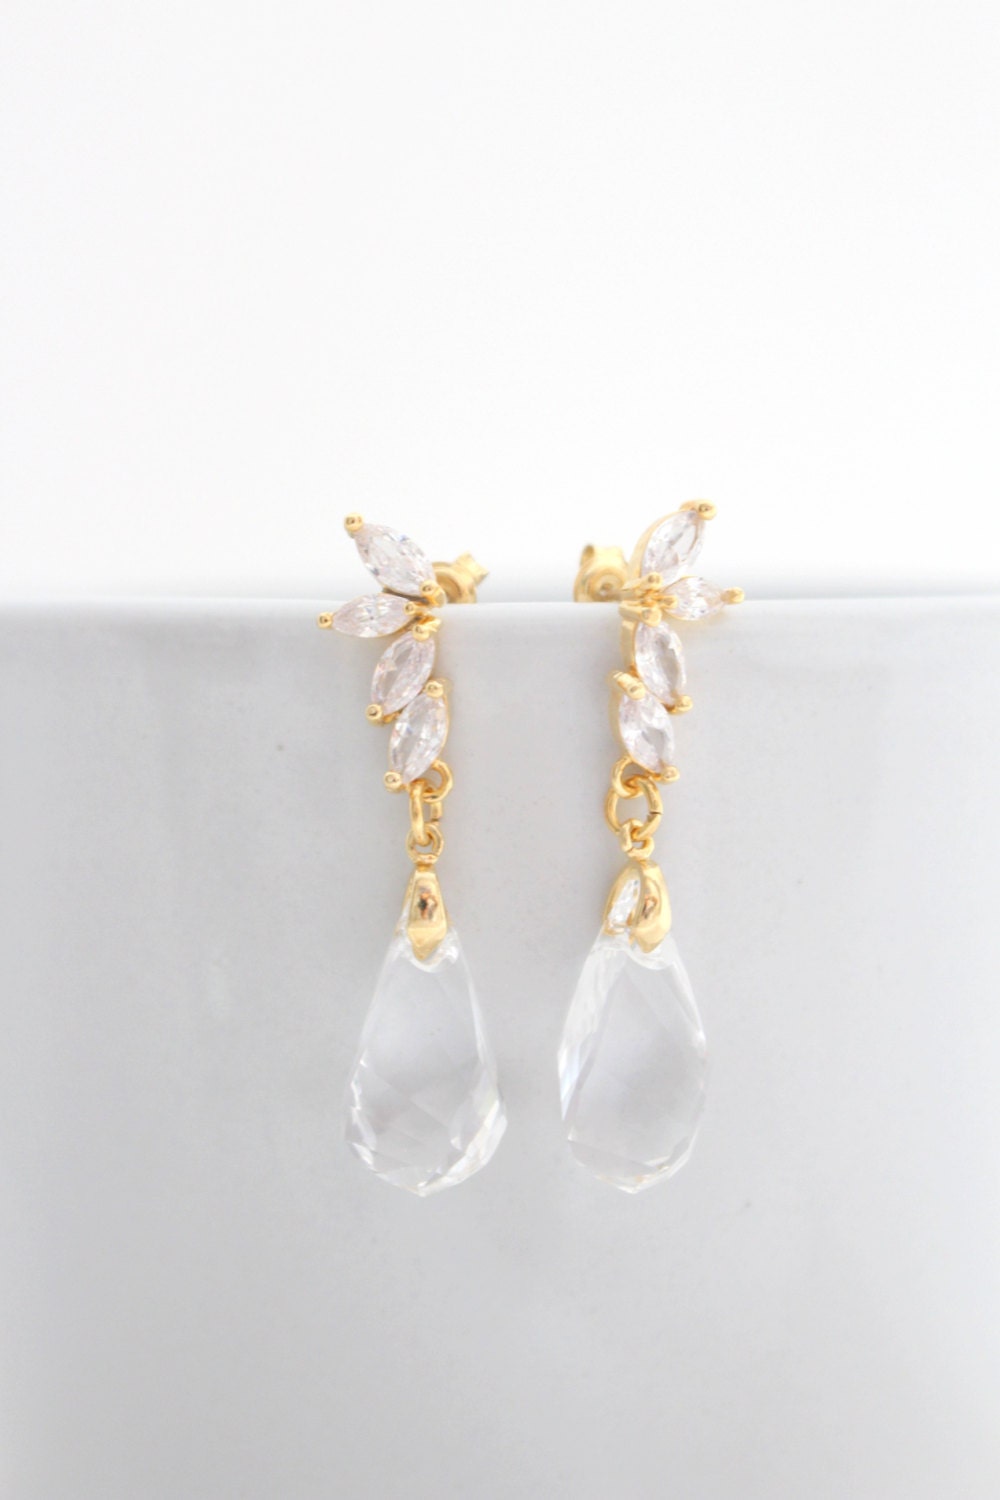 Gold Bridal Earrings Dangle Wedding Earrings Gold Clear | Etsy